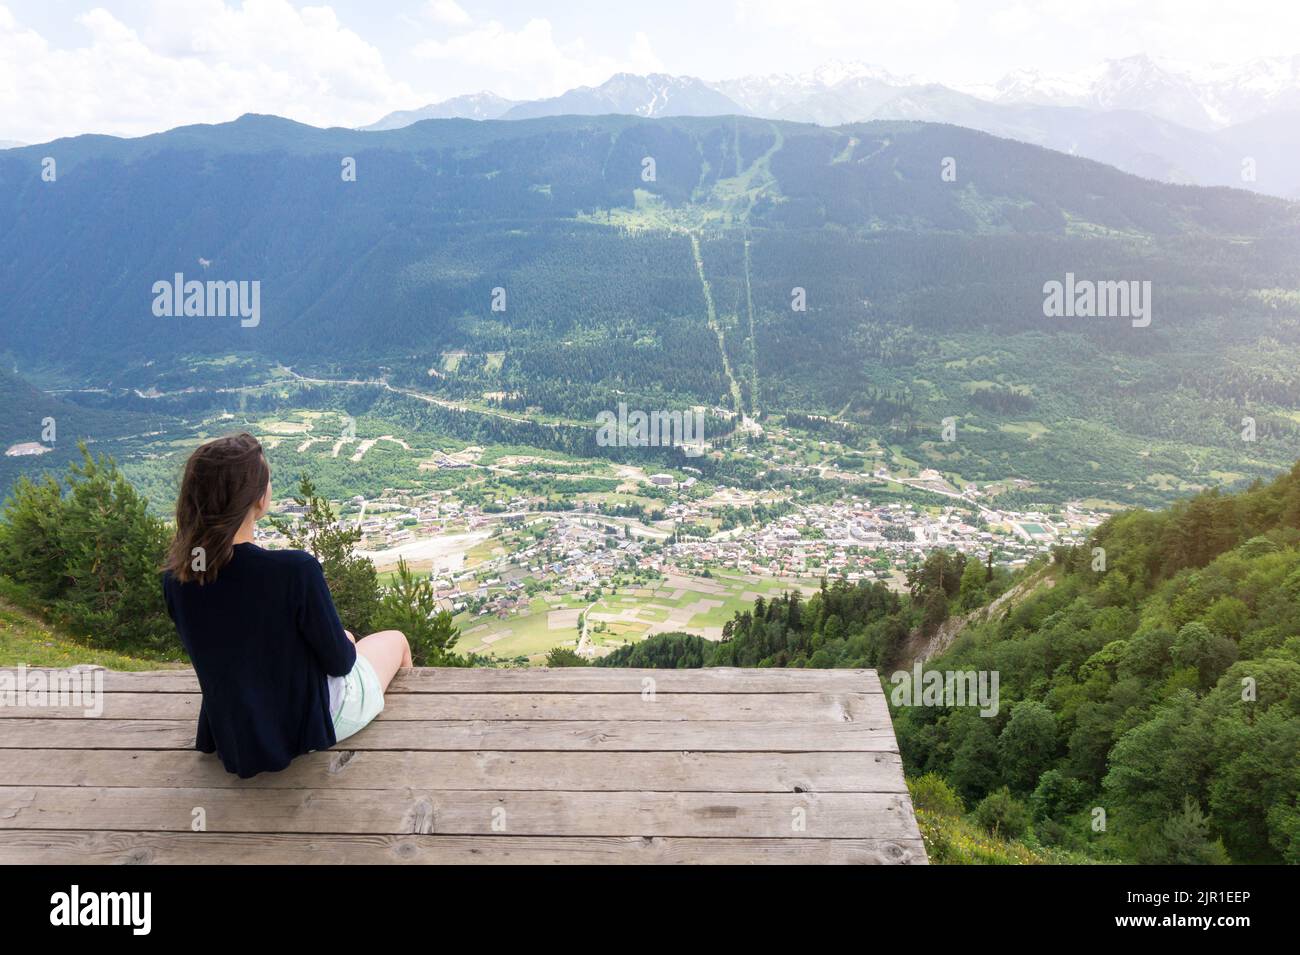 Mestia Dorf Draufsicht vom Aussichtspunkt Cross in der Region Upper Svaneti, Georgien. Unerkennbare junge Frau, die von oben auf Mestia sitzt und sie anschaut Stockfoto